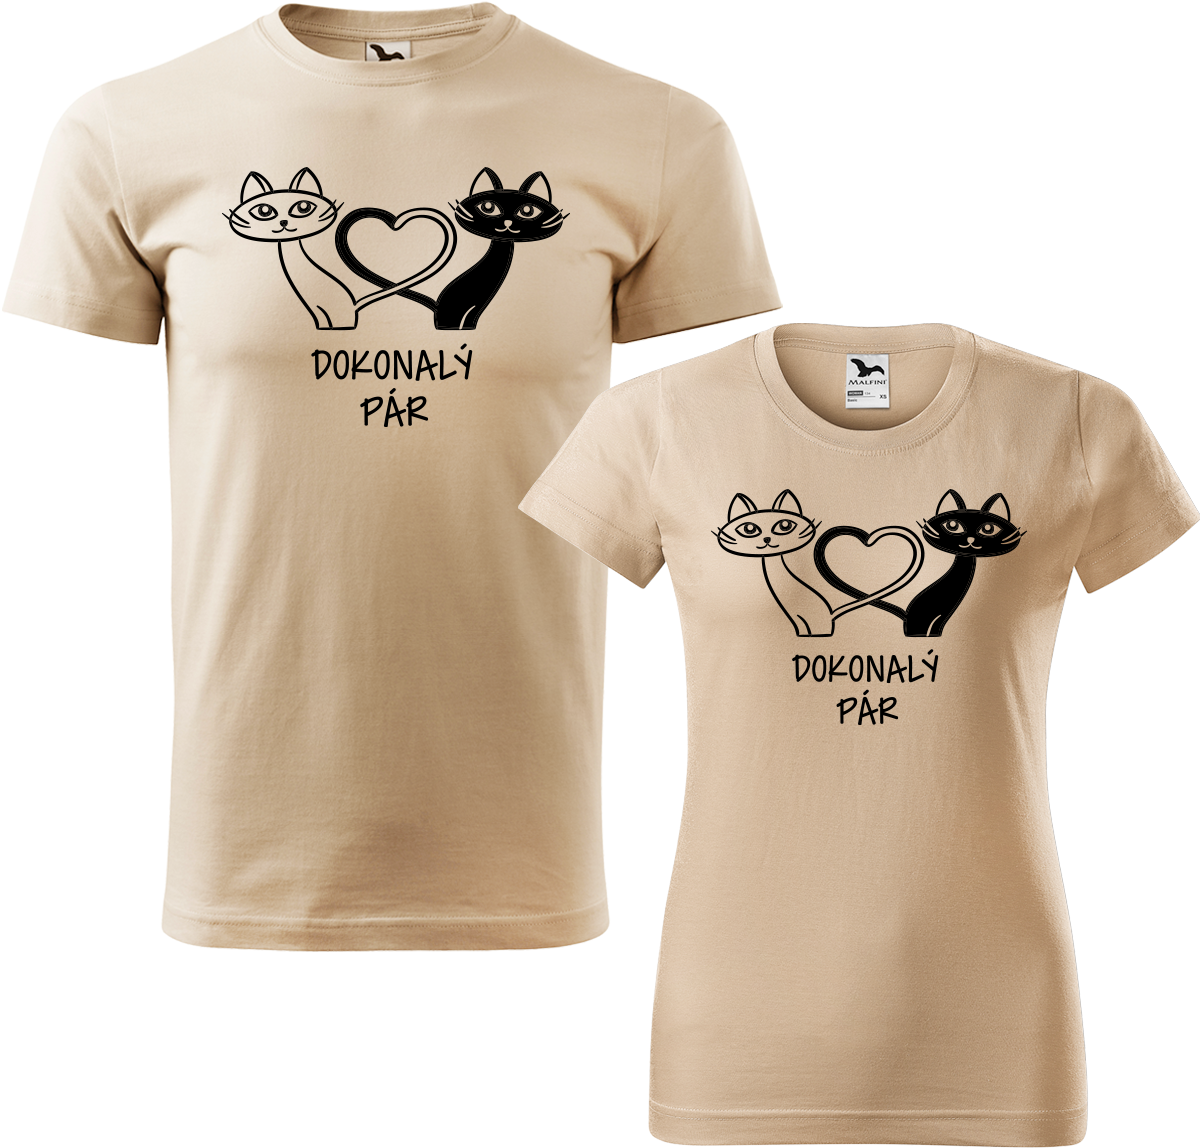 Trička pro páry - Dokonalý pár Barva: Písková (08), Velikost dámské tričko: L, Velikost pánské tričko: XL